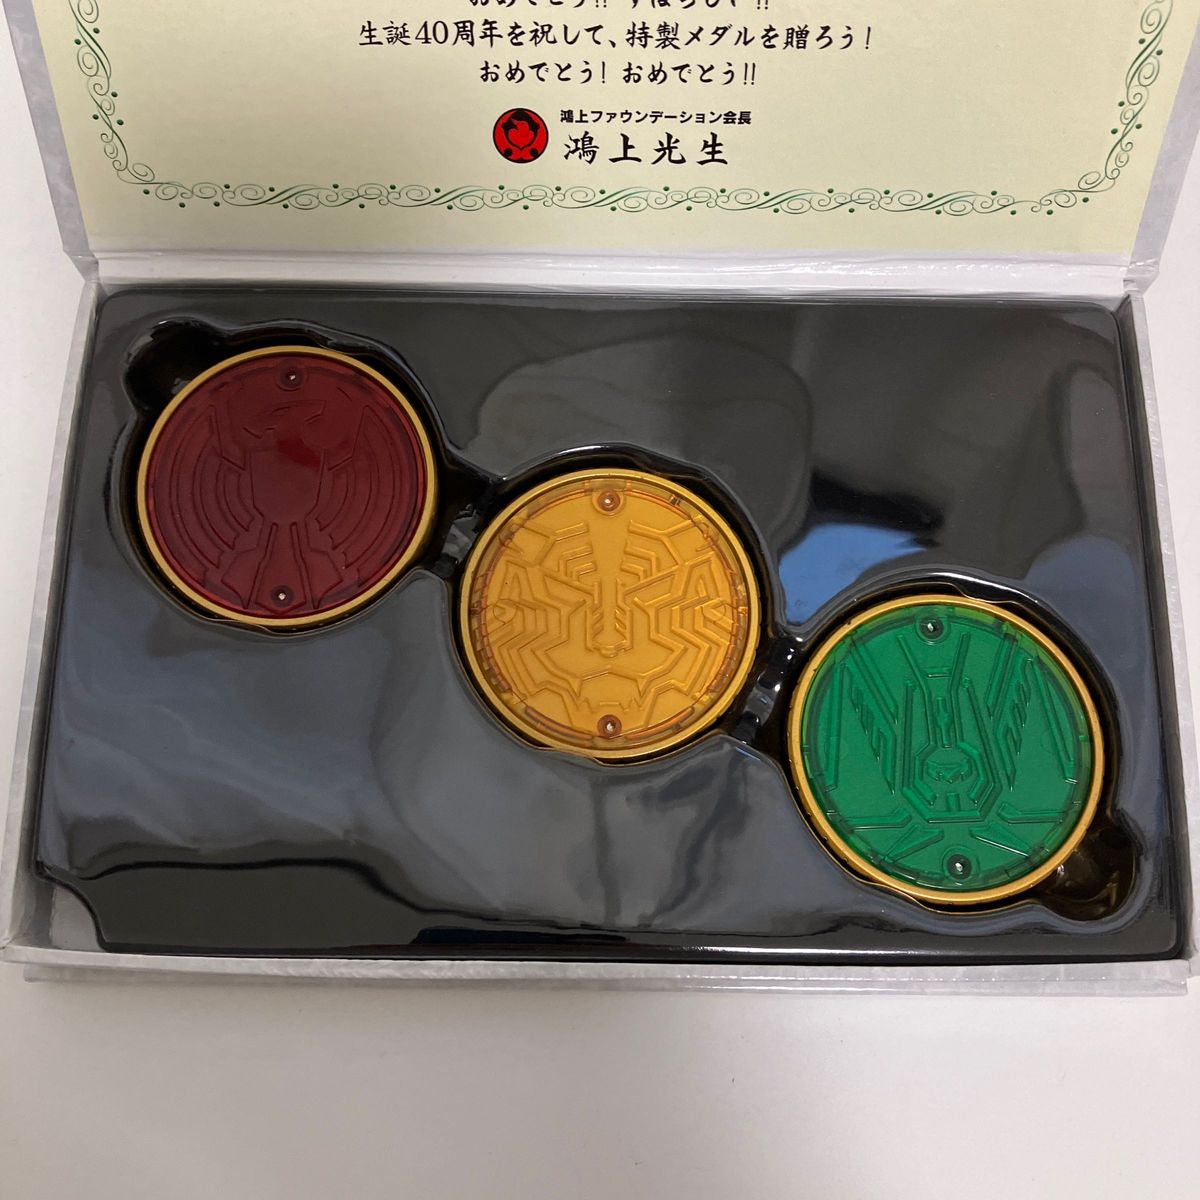 仮面ライダー生誕40周年記念特製コアメダルセット